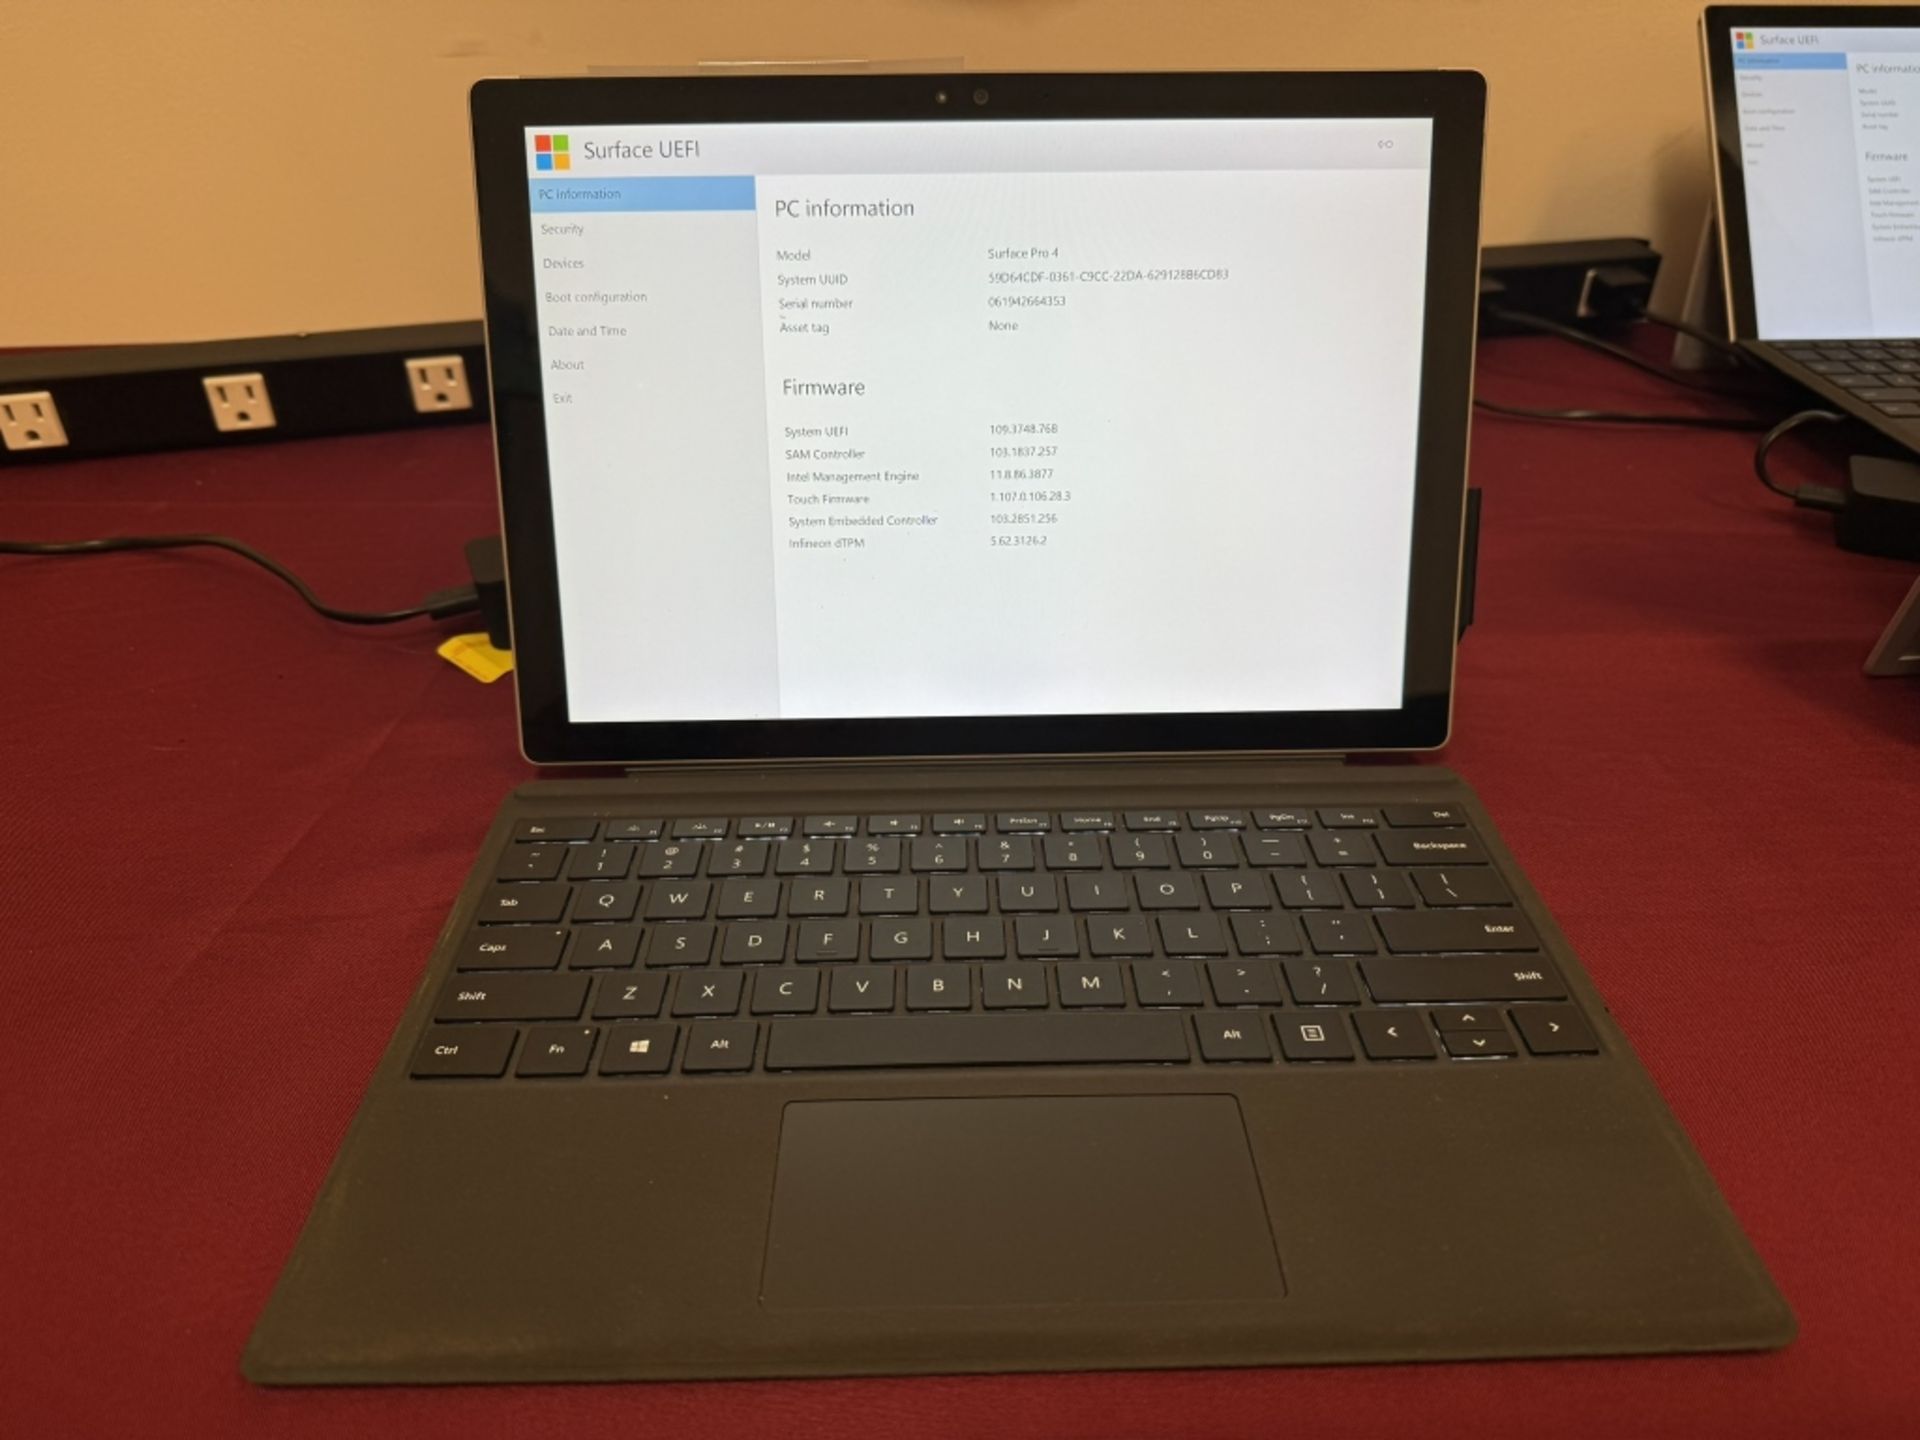 Microsoft Surface Pro 4 Corei7 8GB RAM 256GB SSD - Image 2 of 4